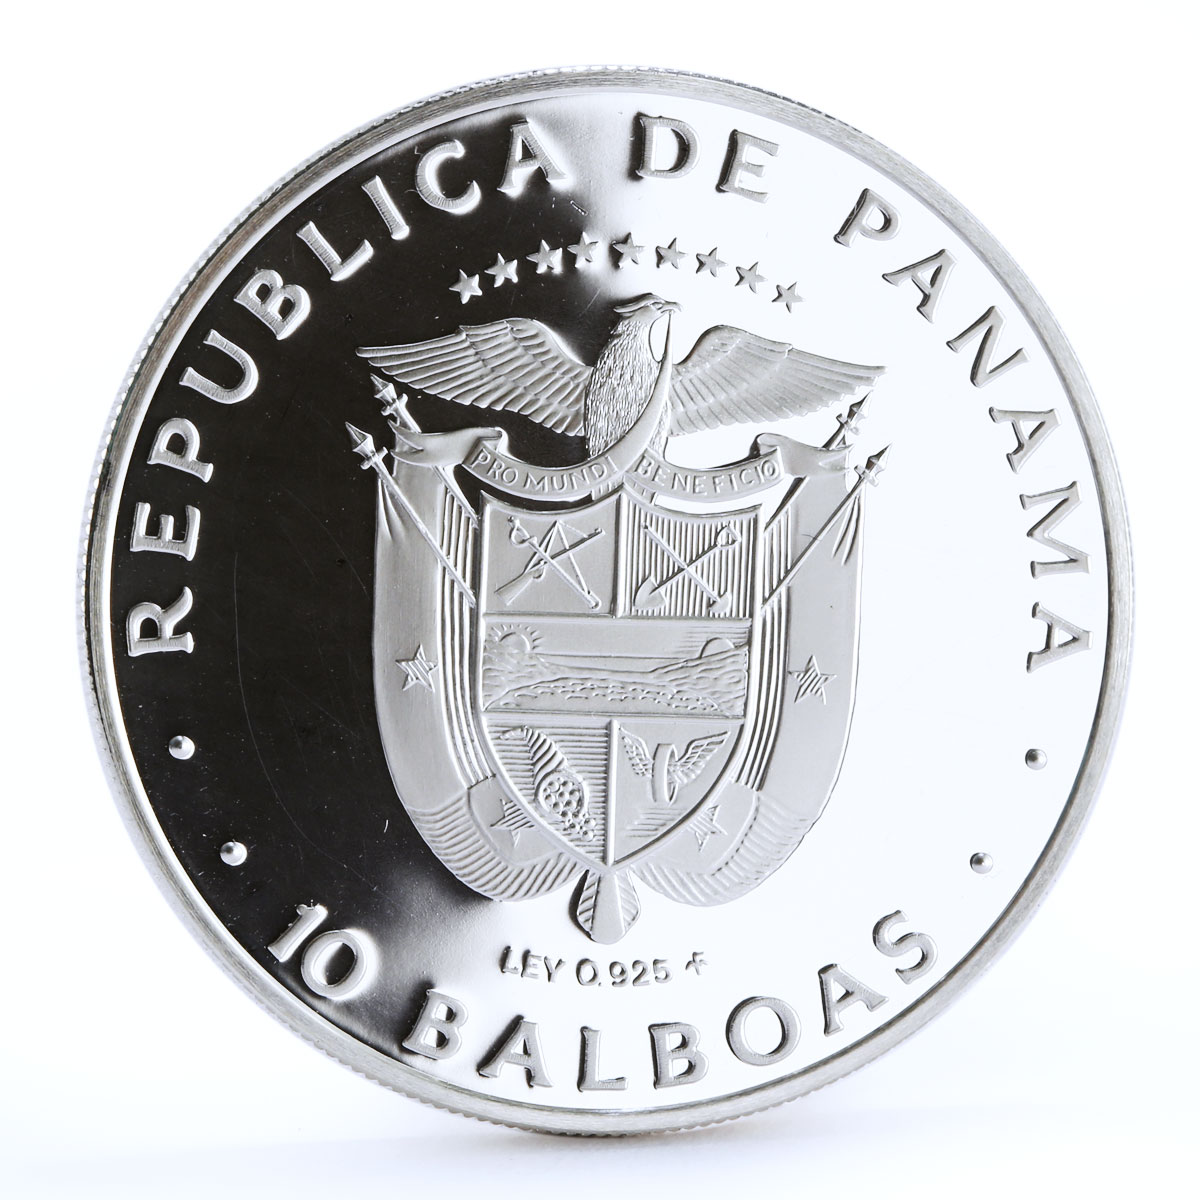 Panama 10 balboas Panama Canal Treaty silver coin 1978